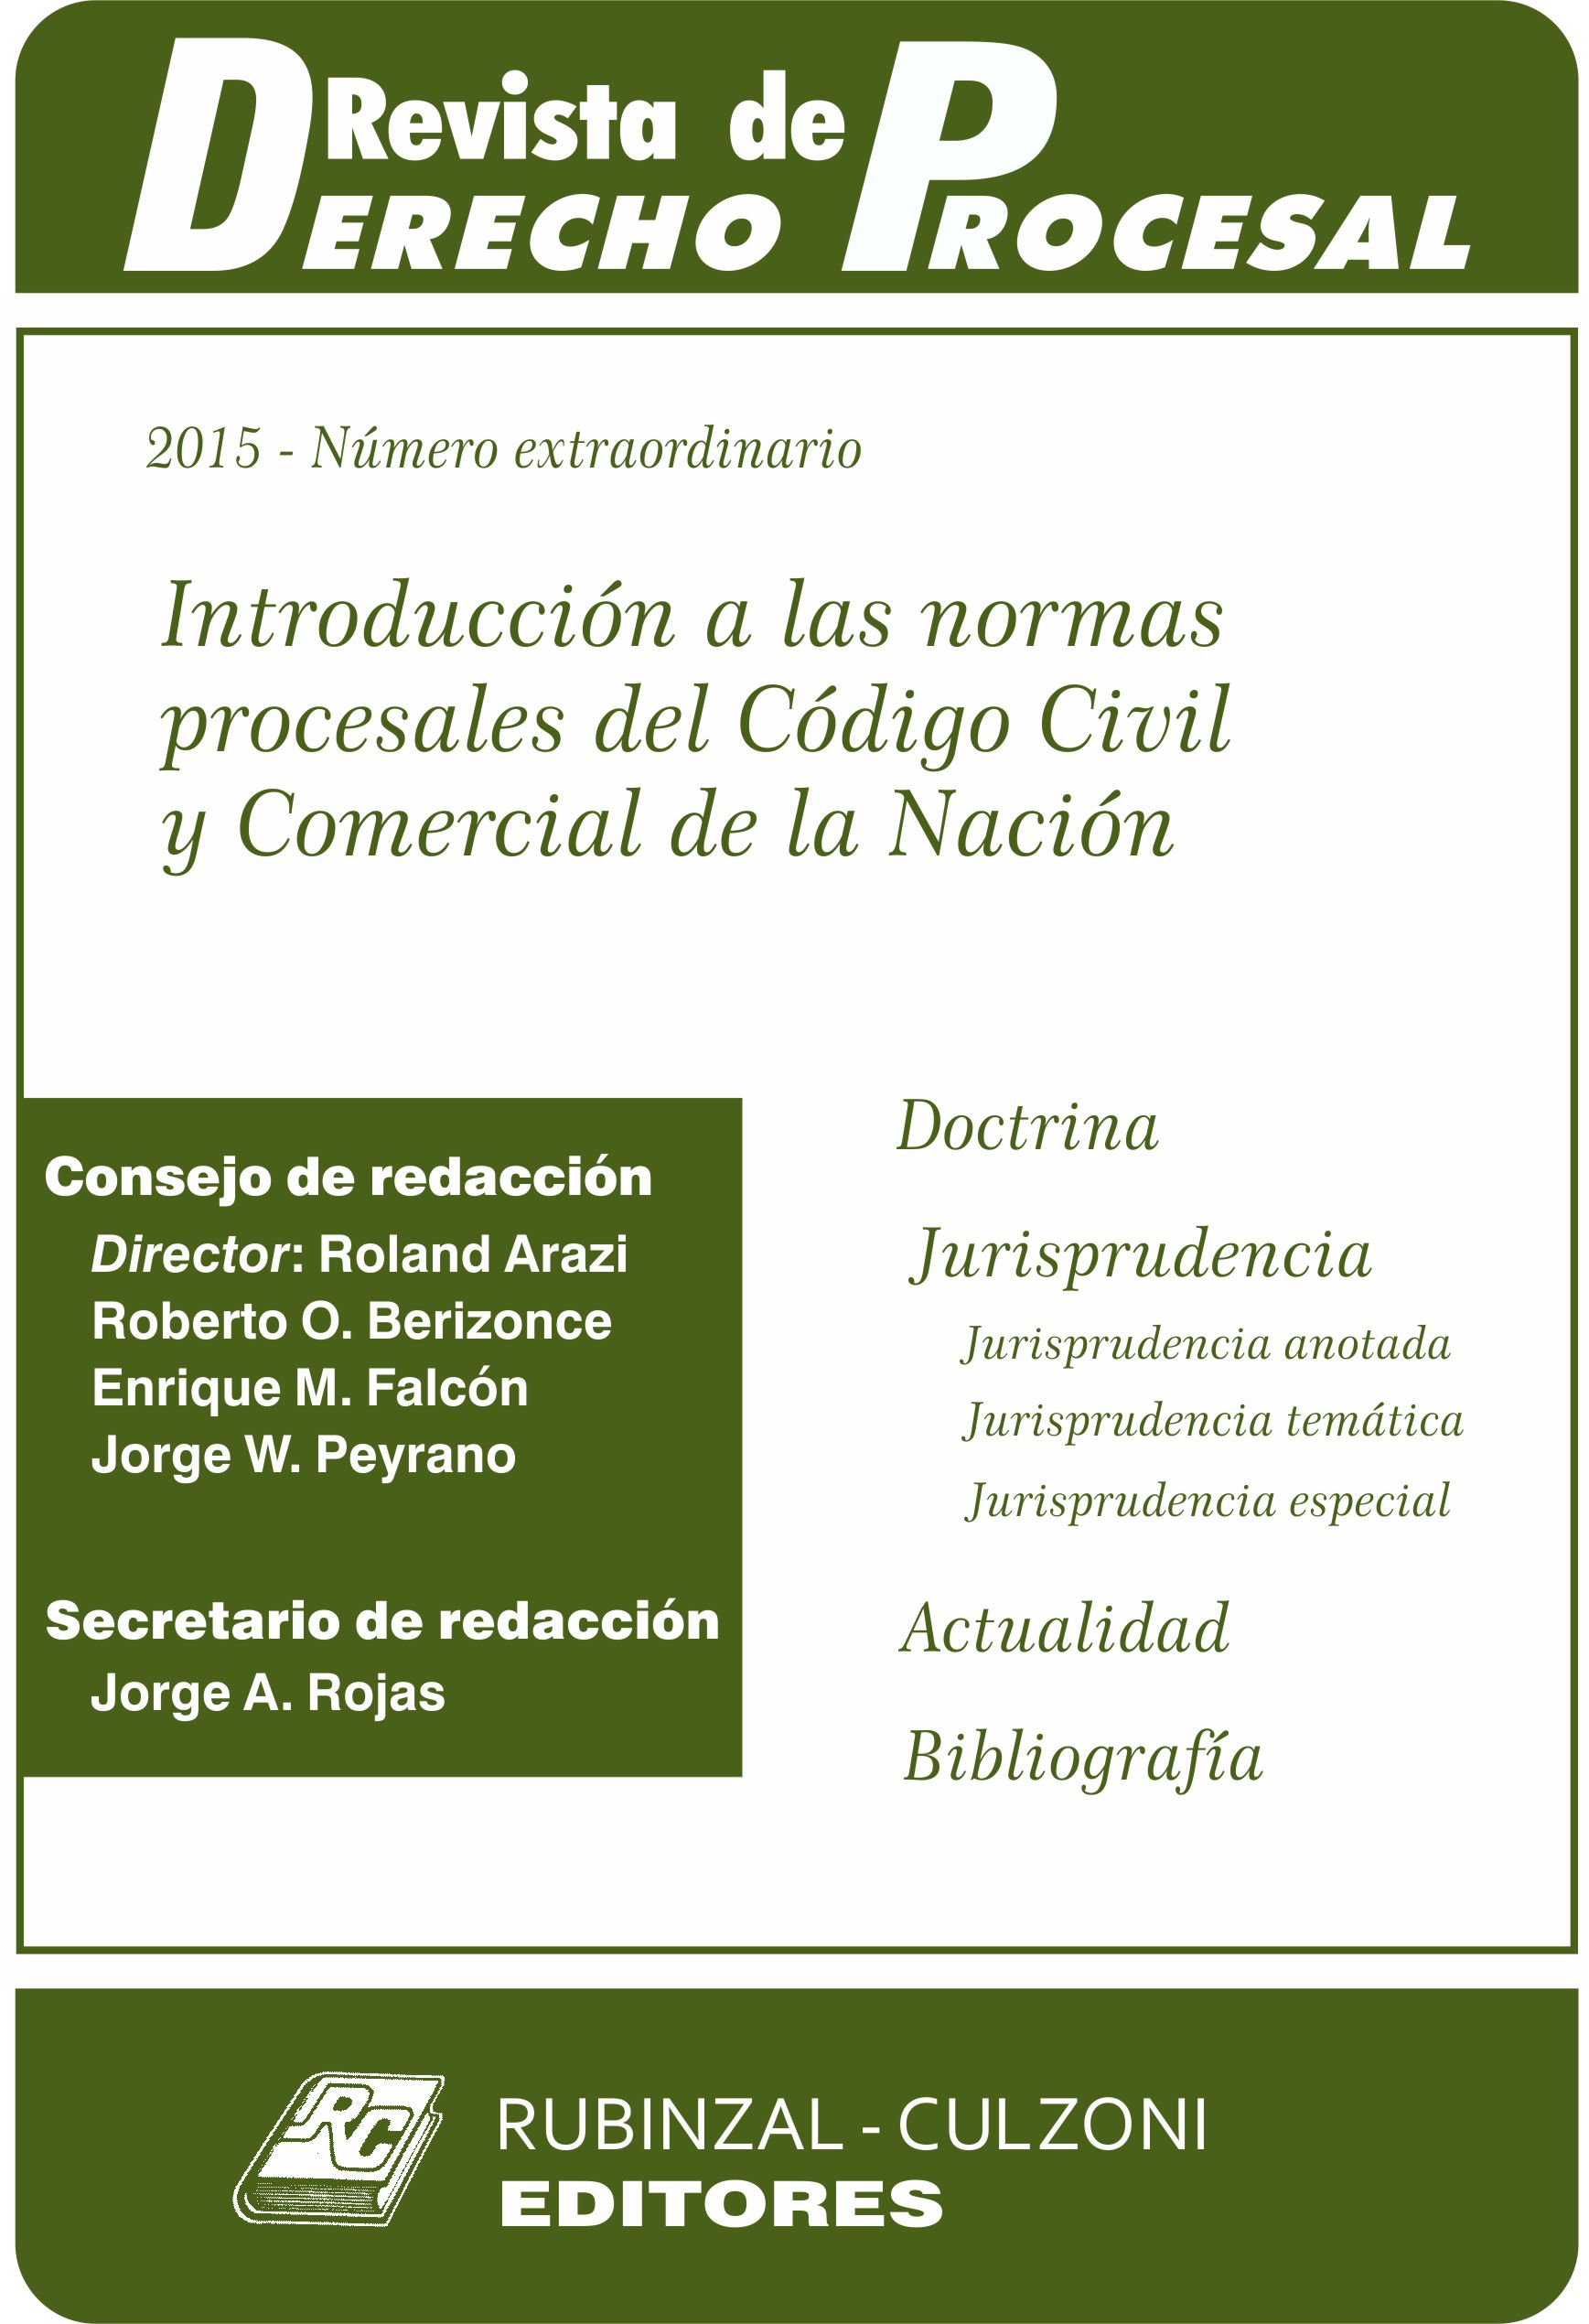 Revista de Derecho Procesal - Número extraordinario - Introducción a las normas procesales del Código Civil y Comercial de la Nación